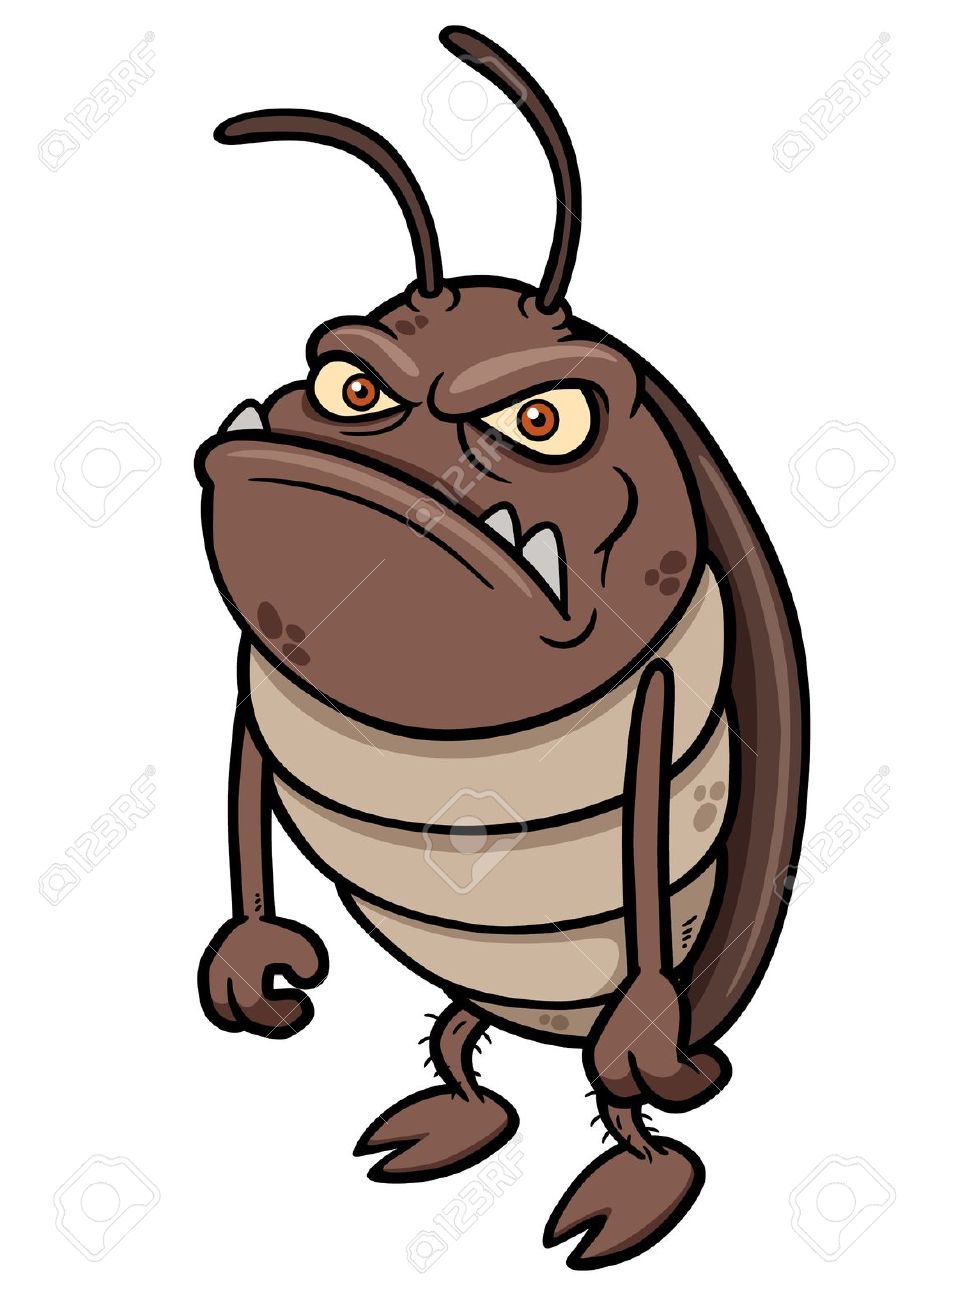 cartoon grumpy bug